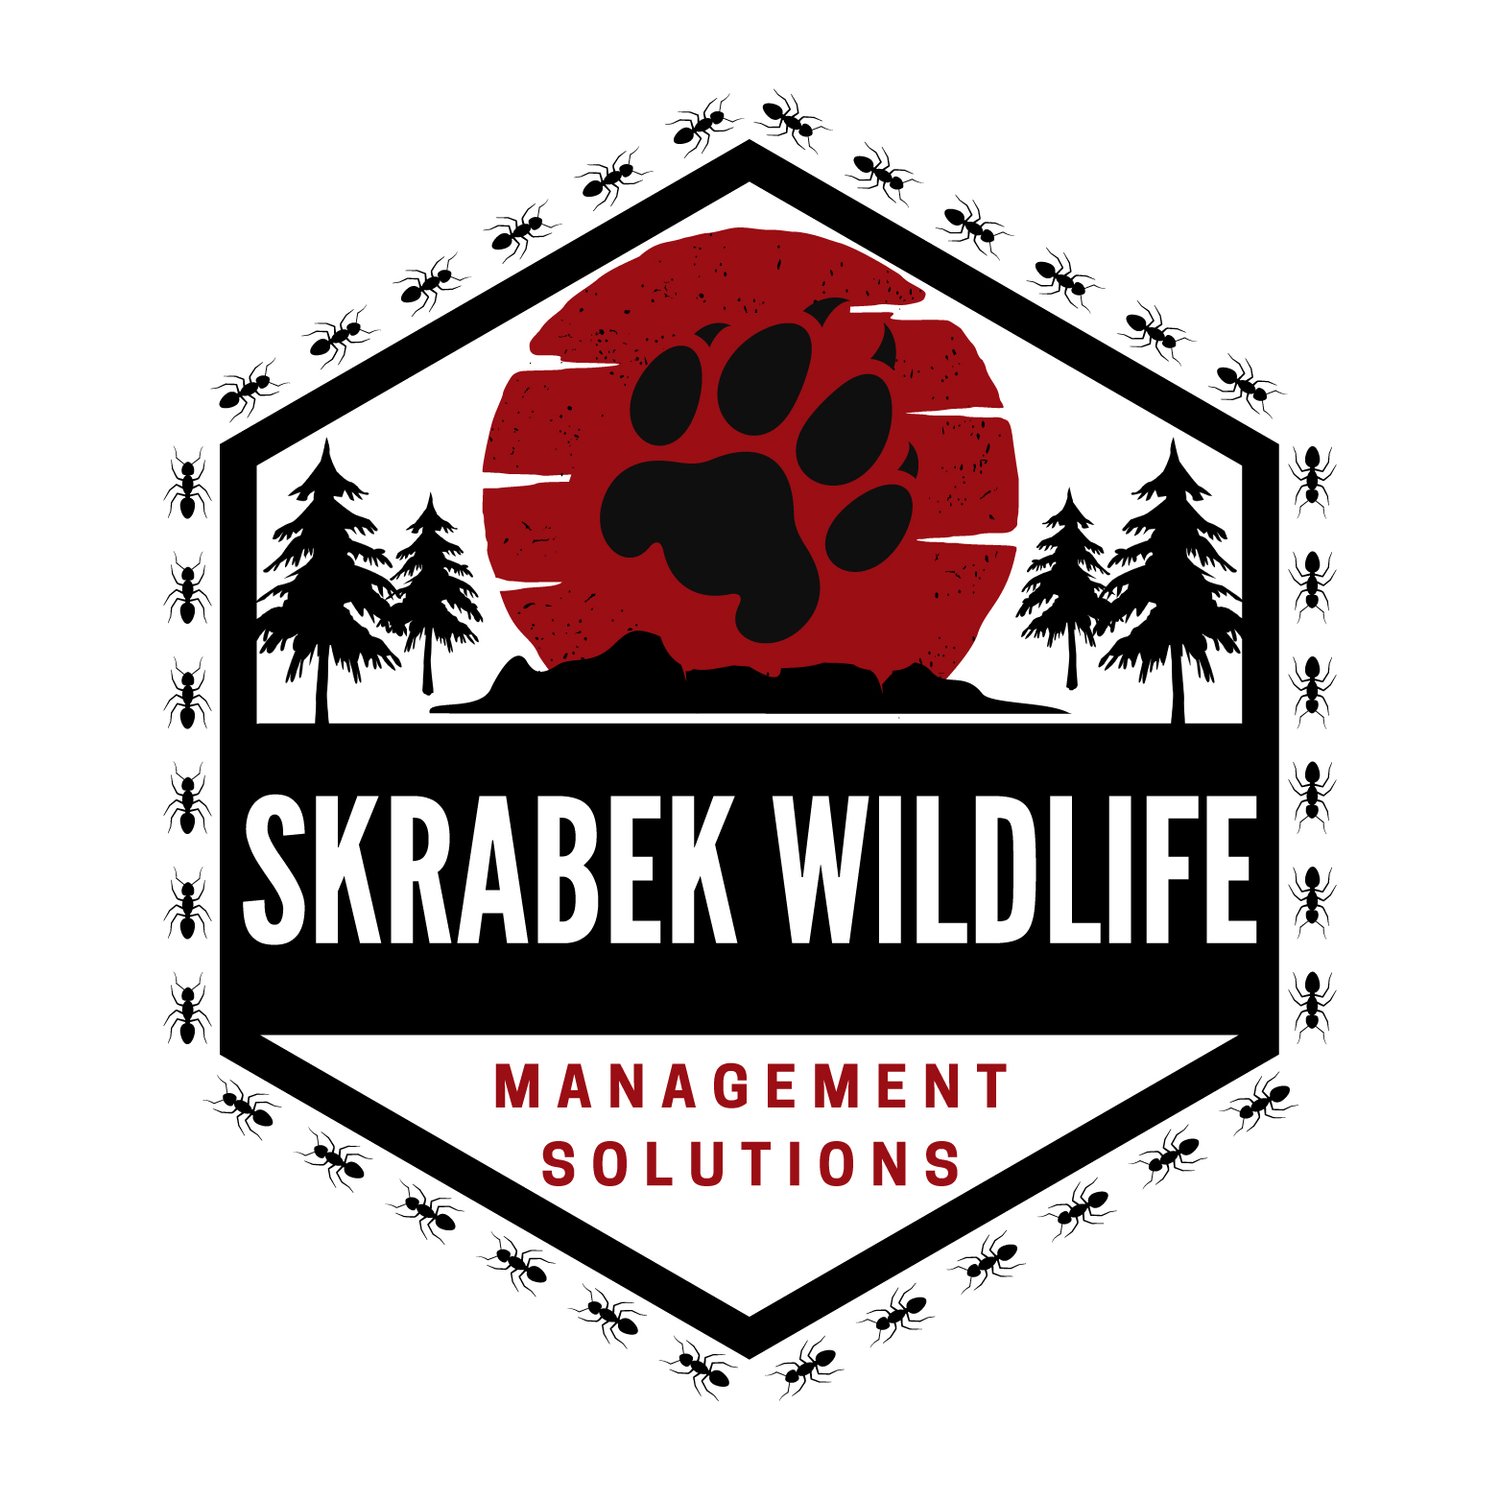 Skrabek Wildlife Management